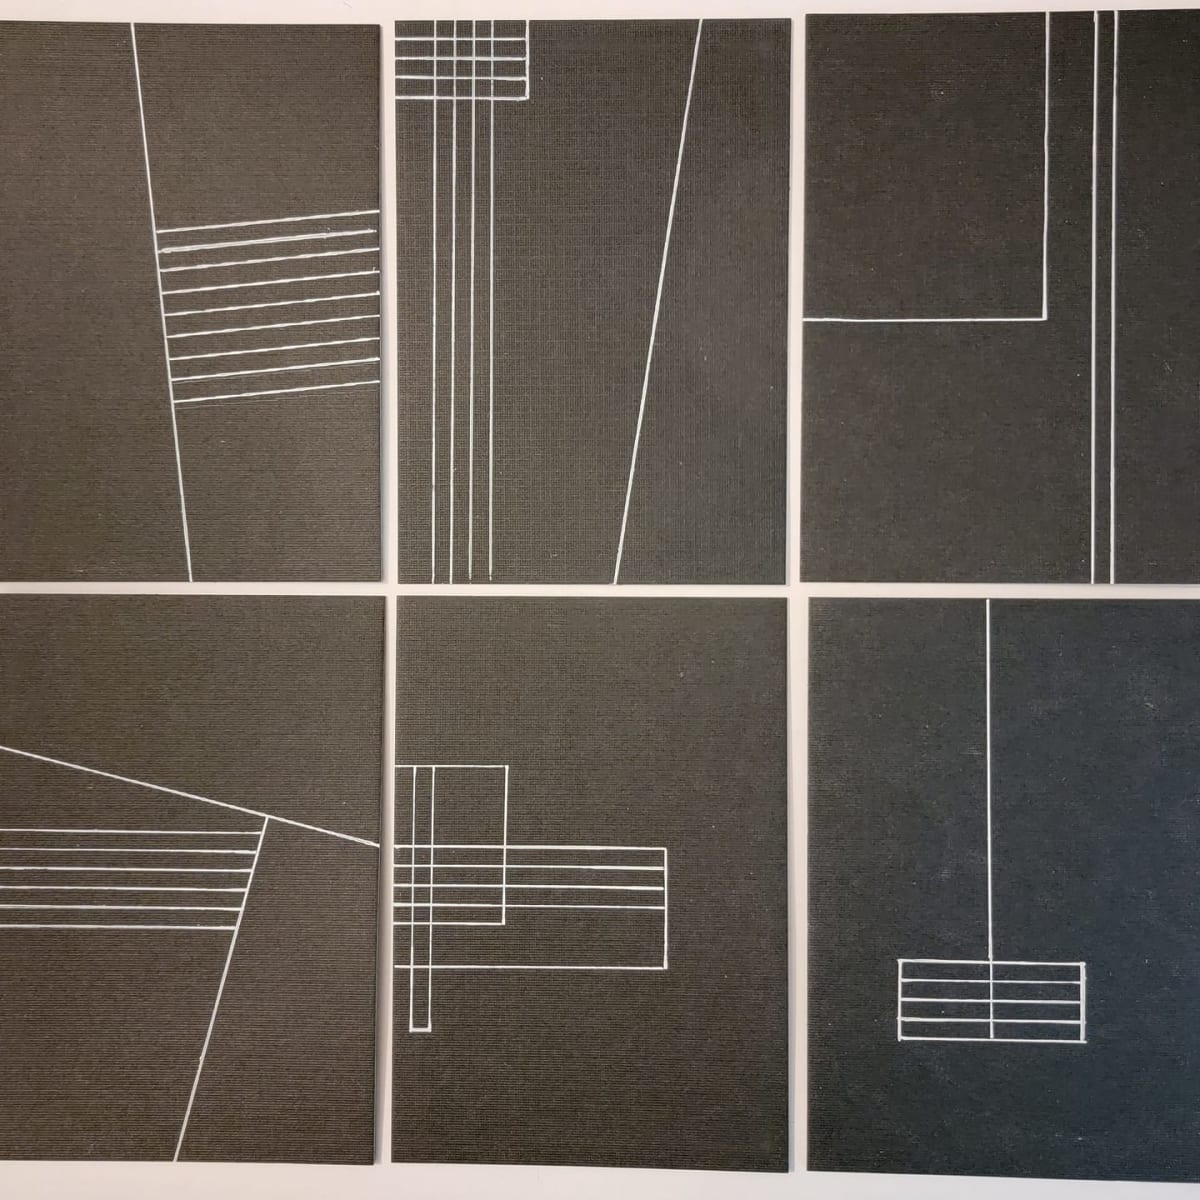 Lines on 6 Black Panels 